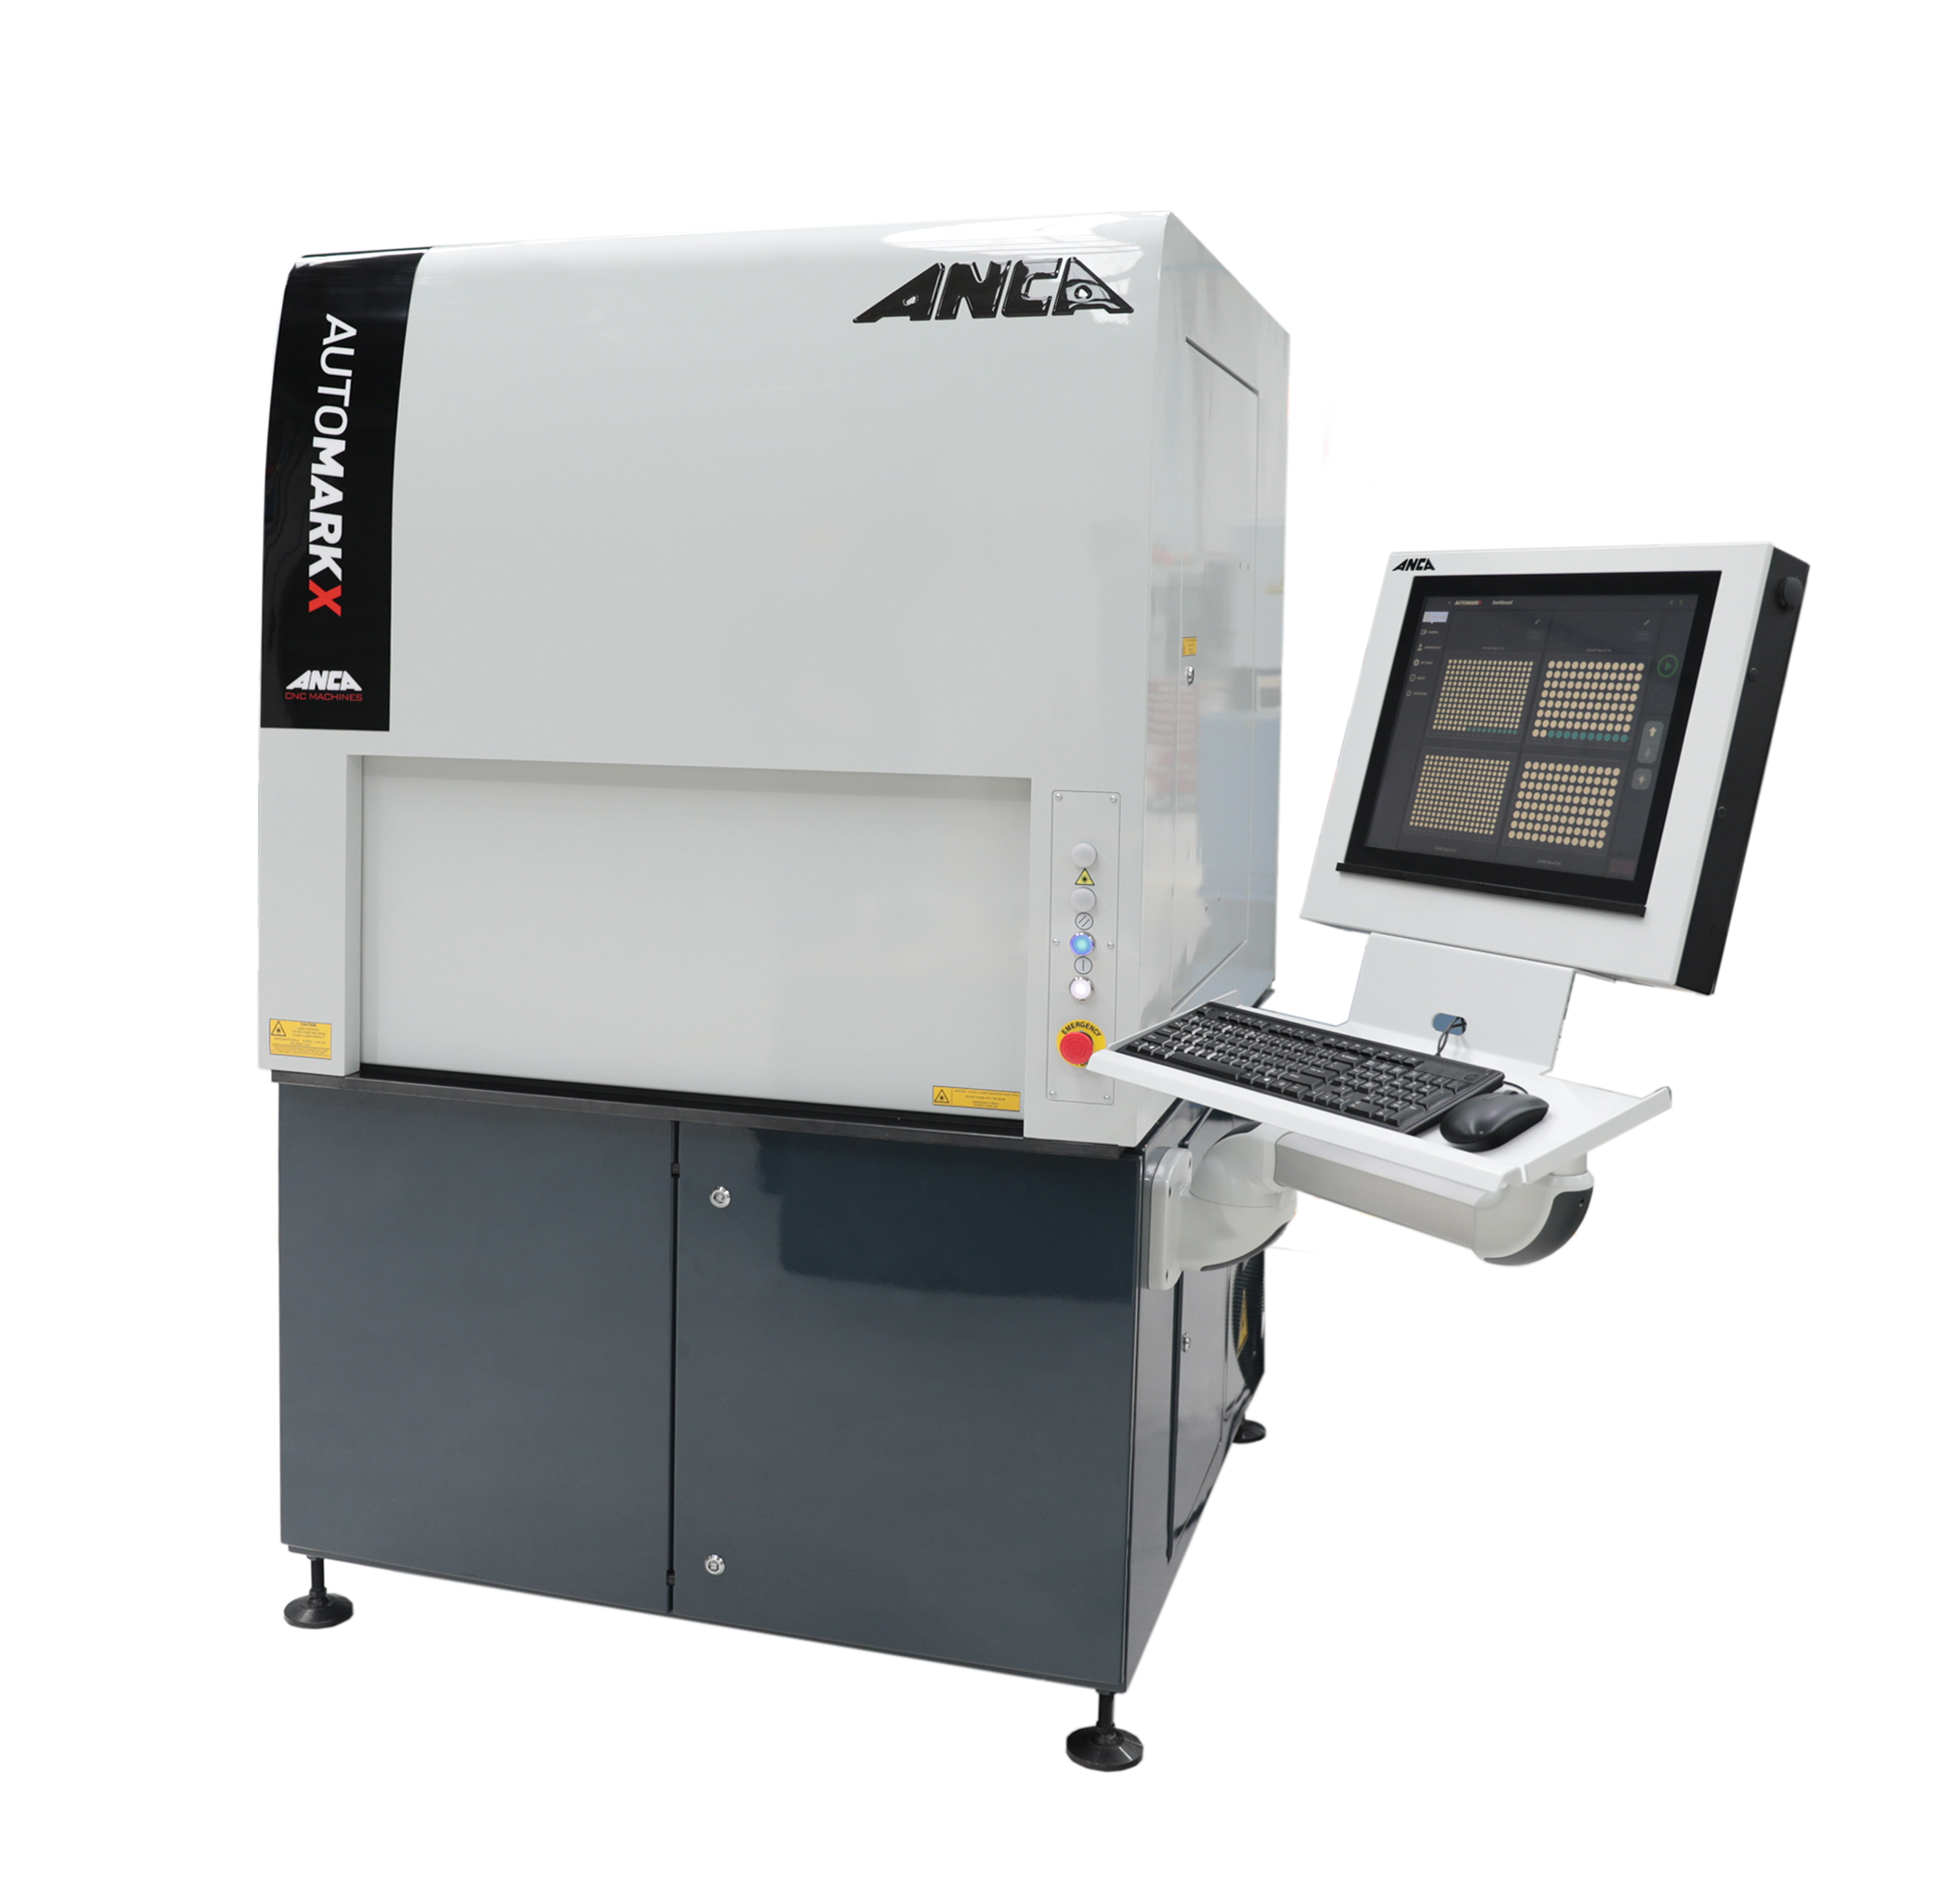 The AutoMarkX laser marking machine.